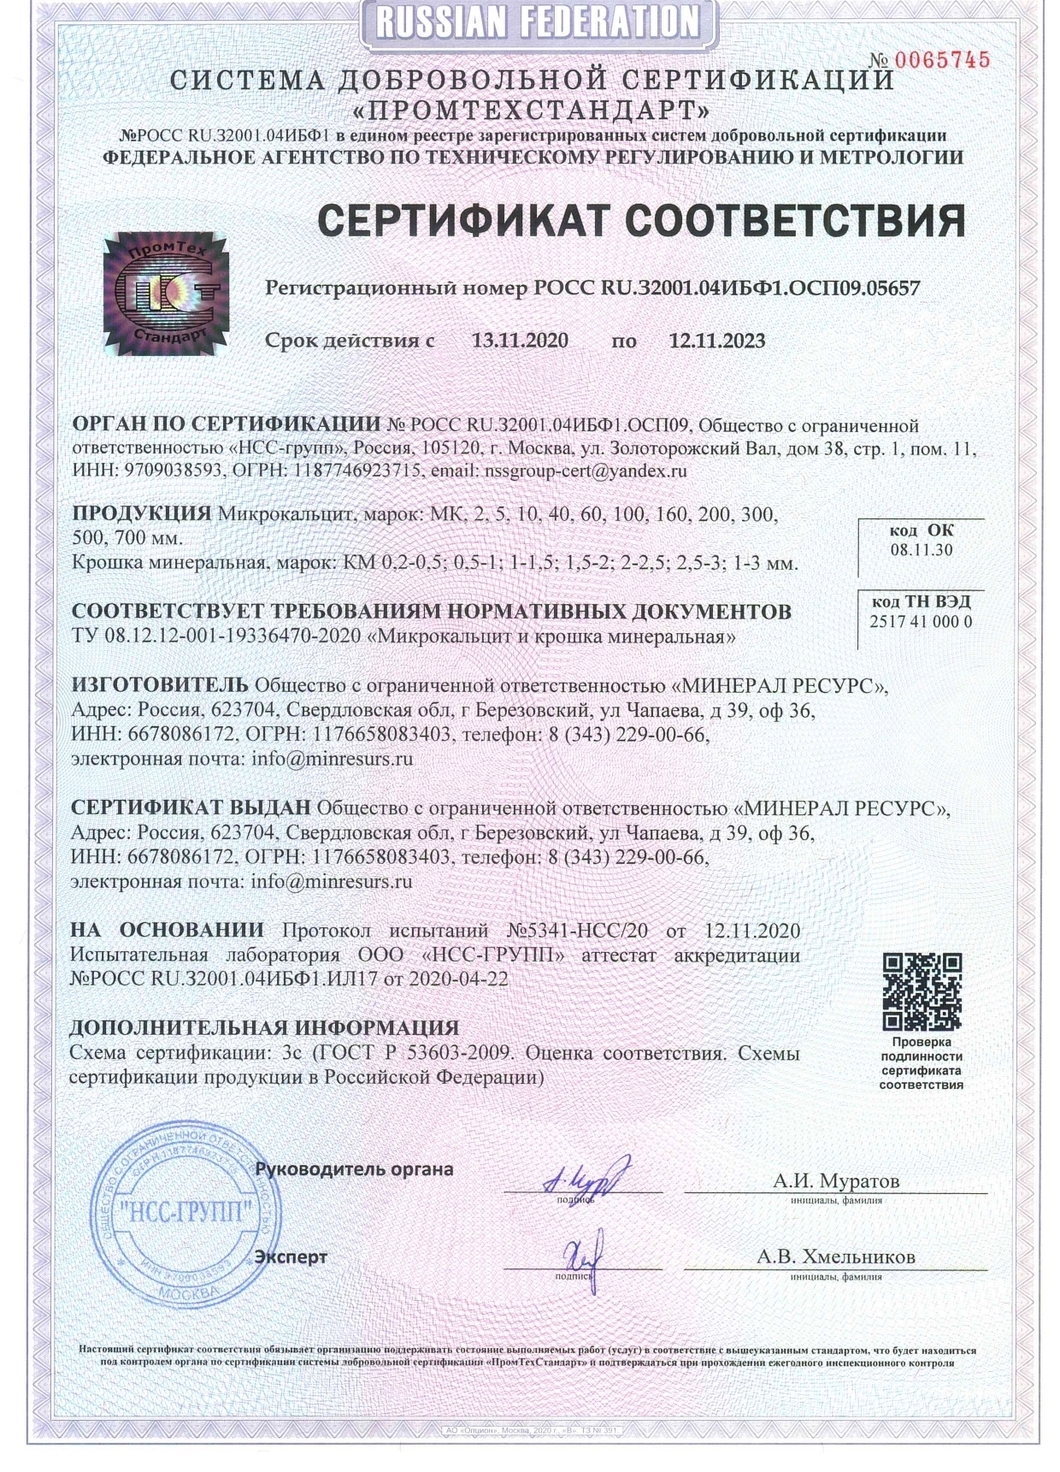 Сертификат соответствия: Мраморная крошка ТУ 08.12.12-001-19336470-2020